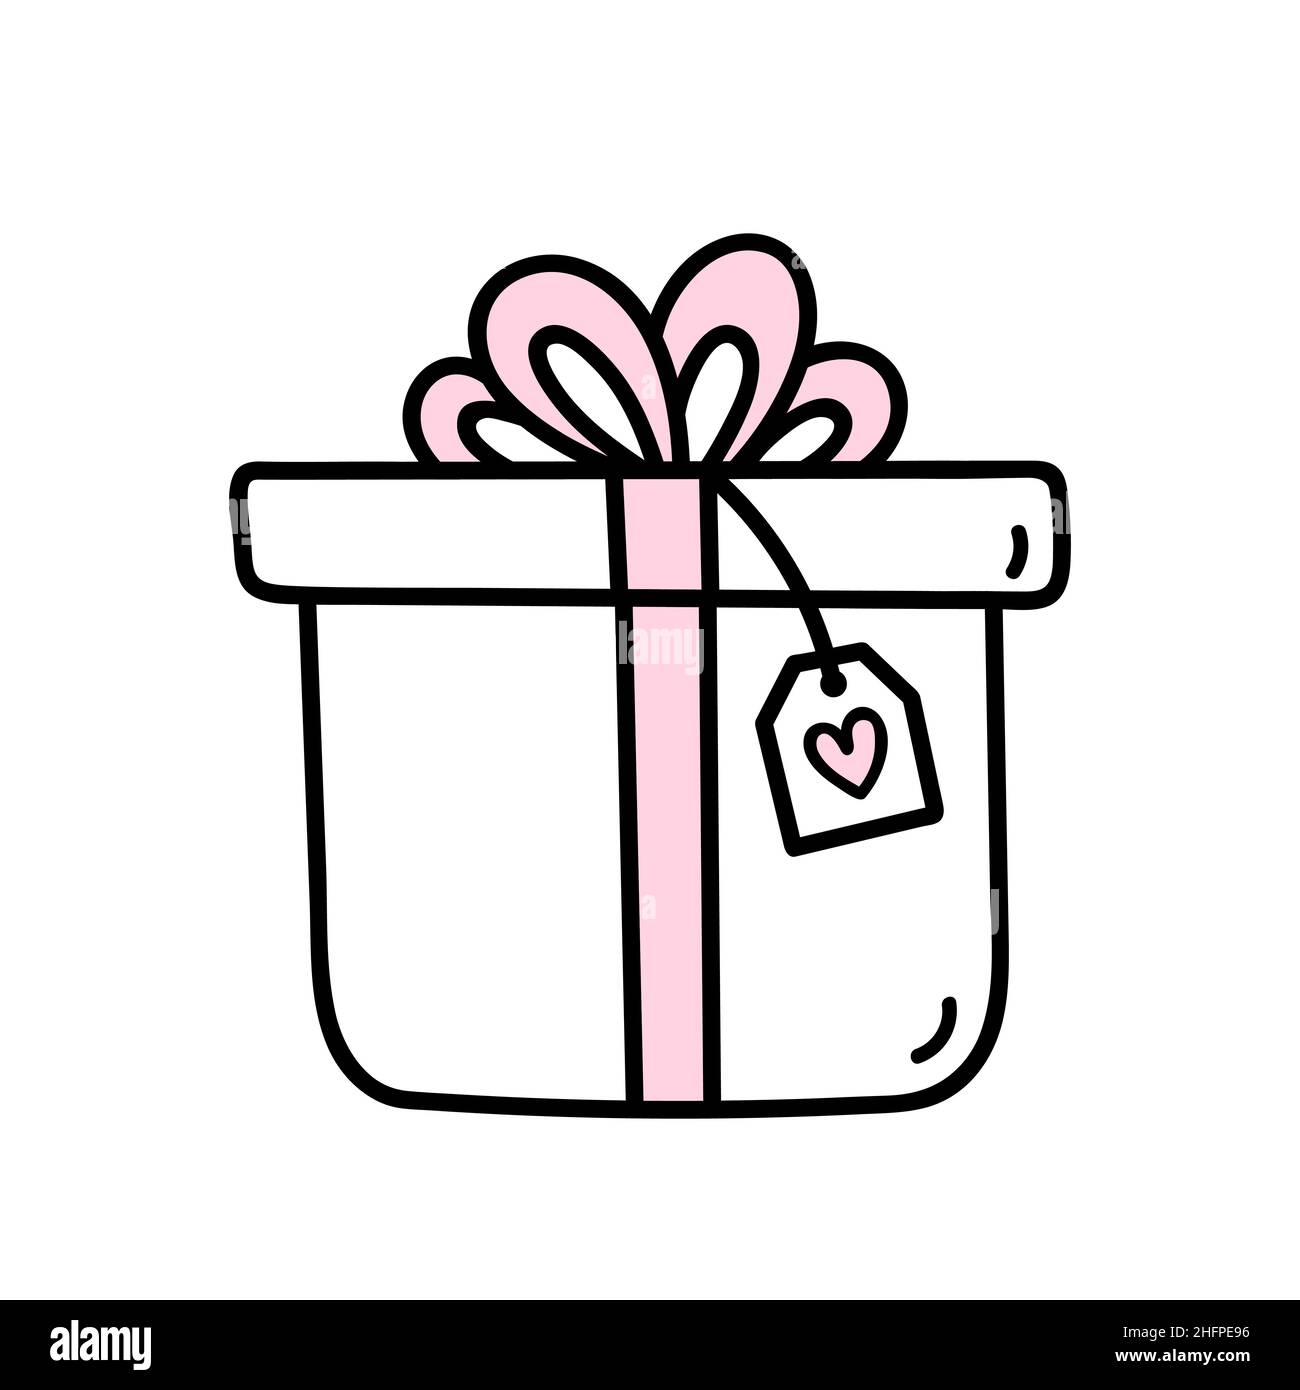 Cadeau mignon avec noeud rose et ruban pour la Saint-Valentin isolé sur  fond blanc.Illustration vectorielle dessinée à la main, style doodle.Parfait  pour les motifs de vacances, les cartes, les décorations, le logo